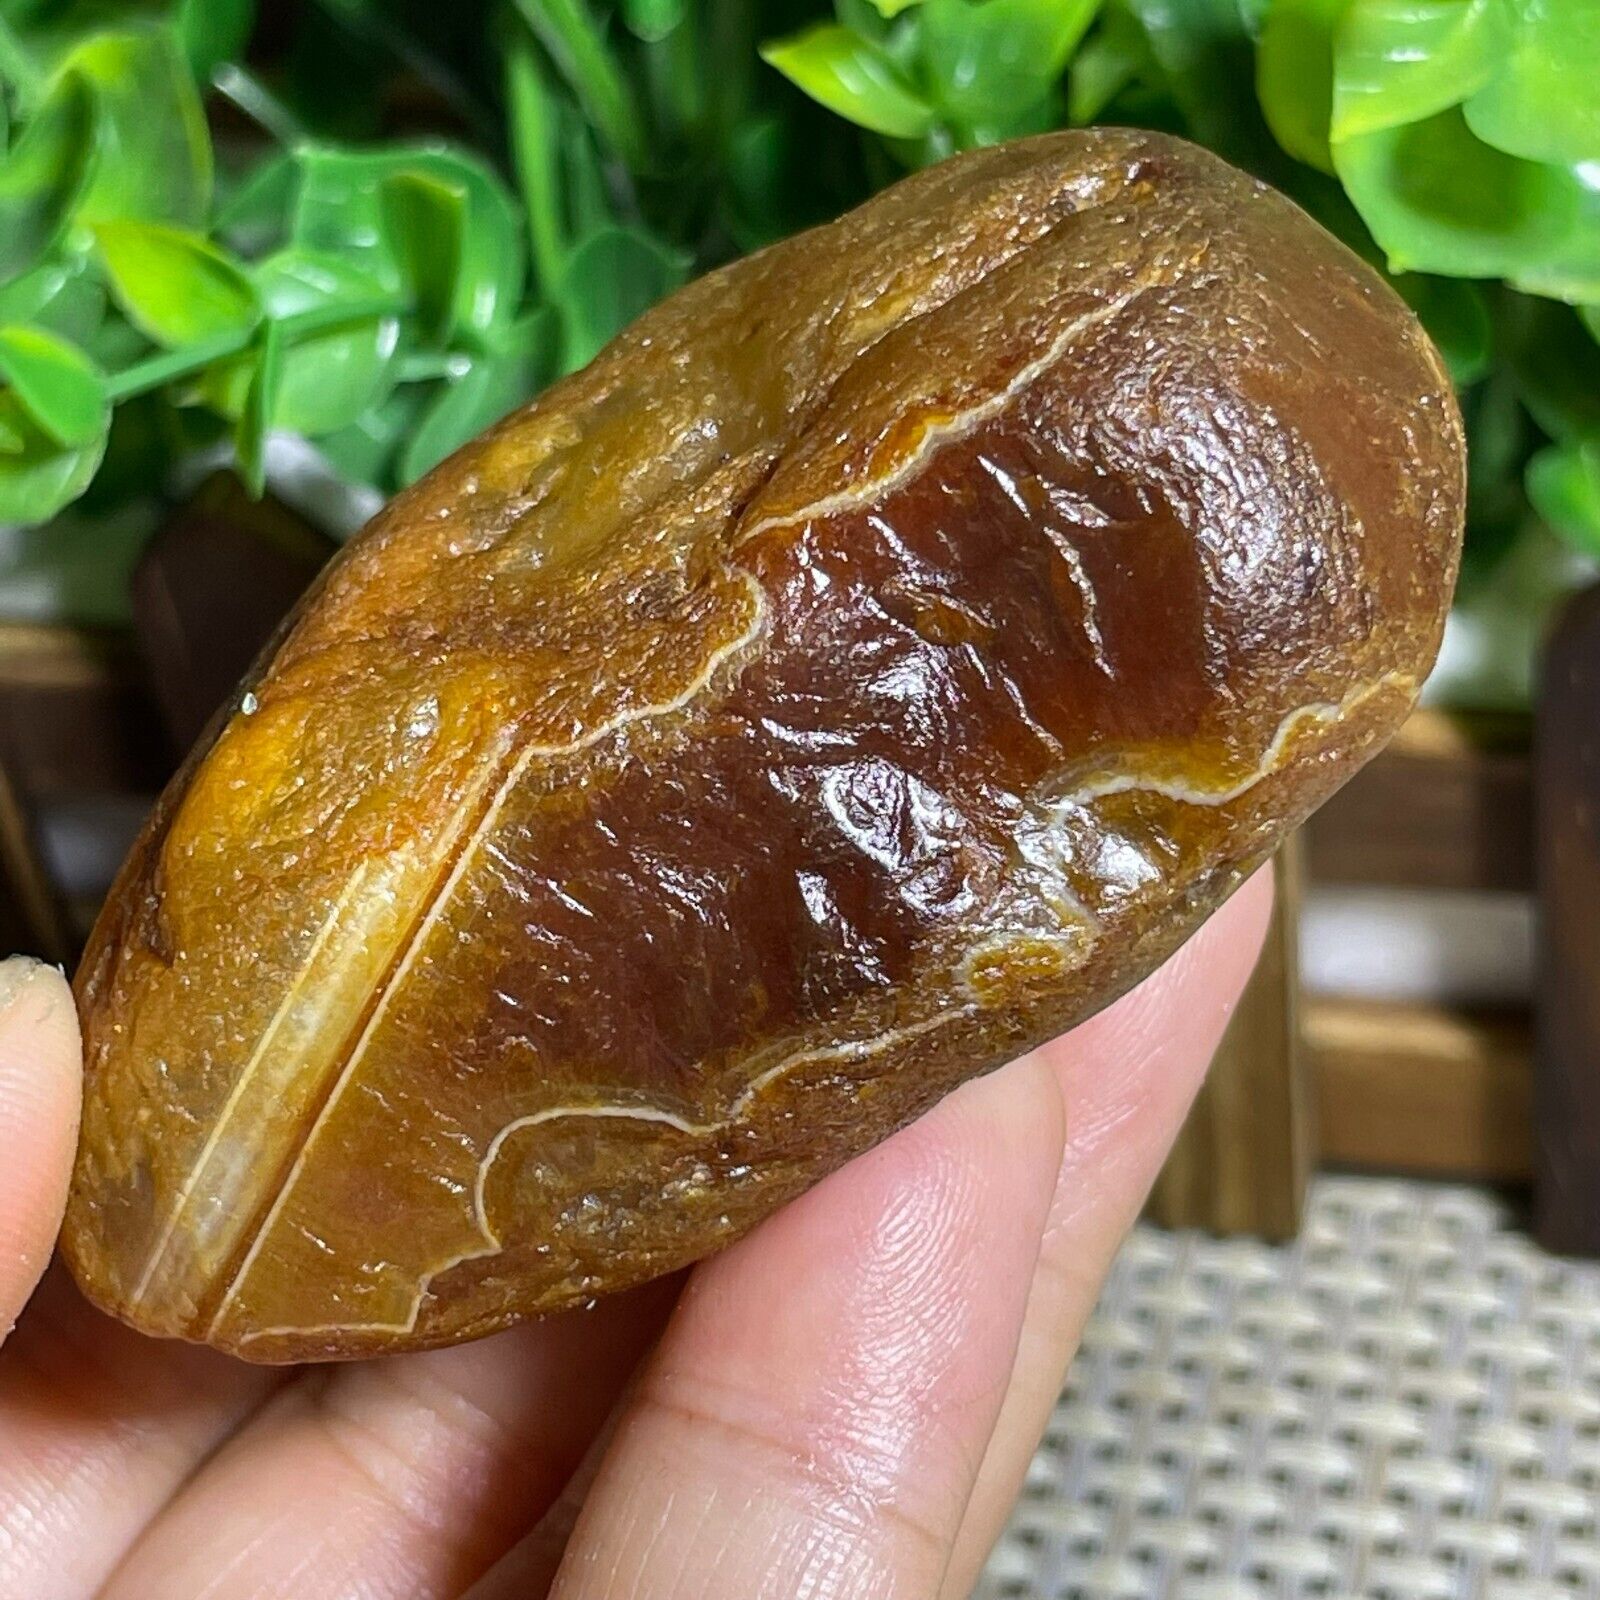 Top Bonsai Suiseki-Natural Gobi Agate Eyes Stone-Rare Stunning Viewing 152g A45